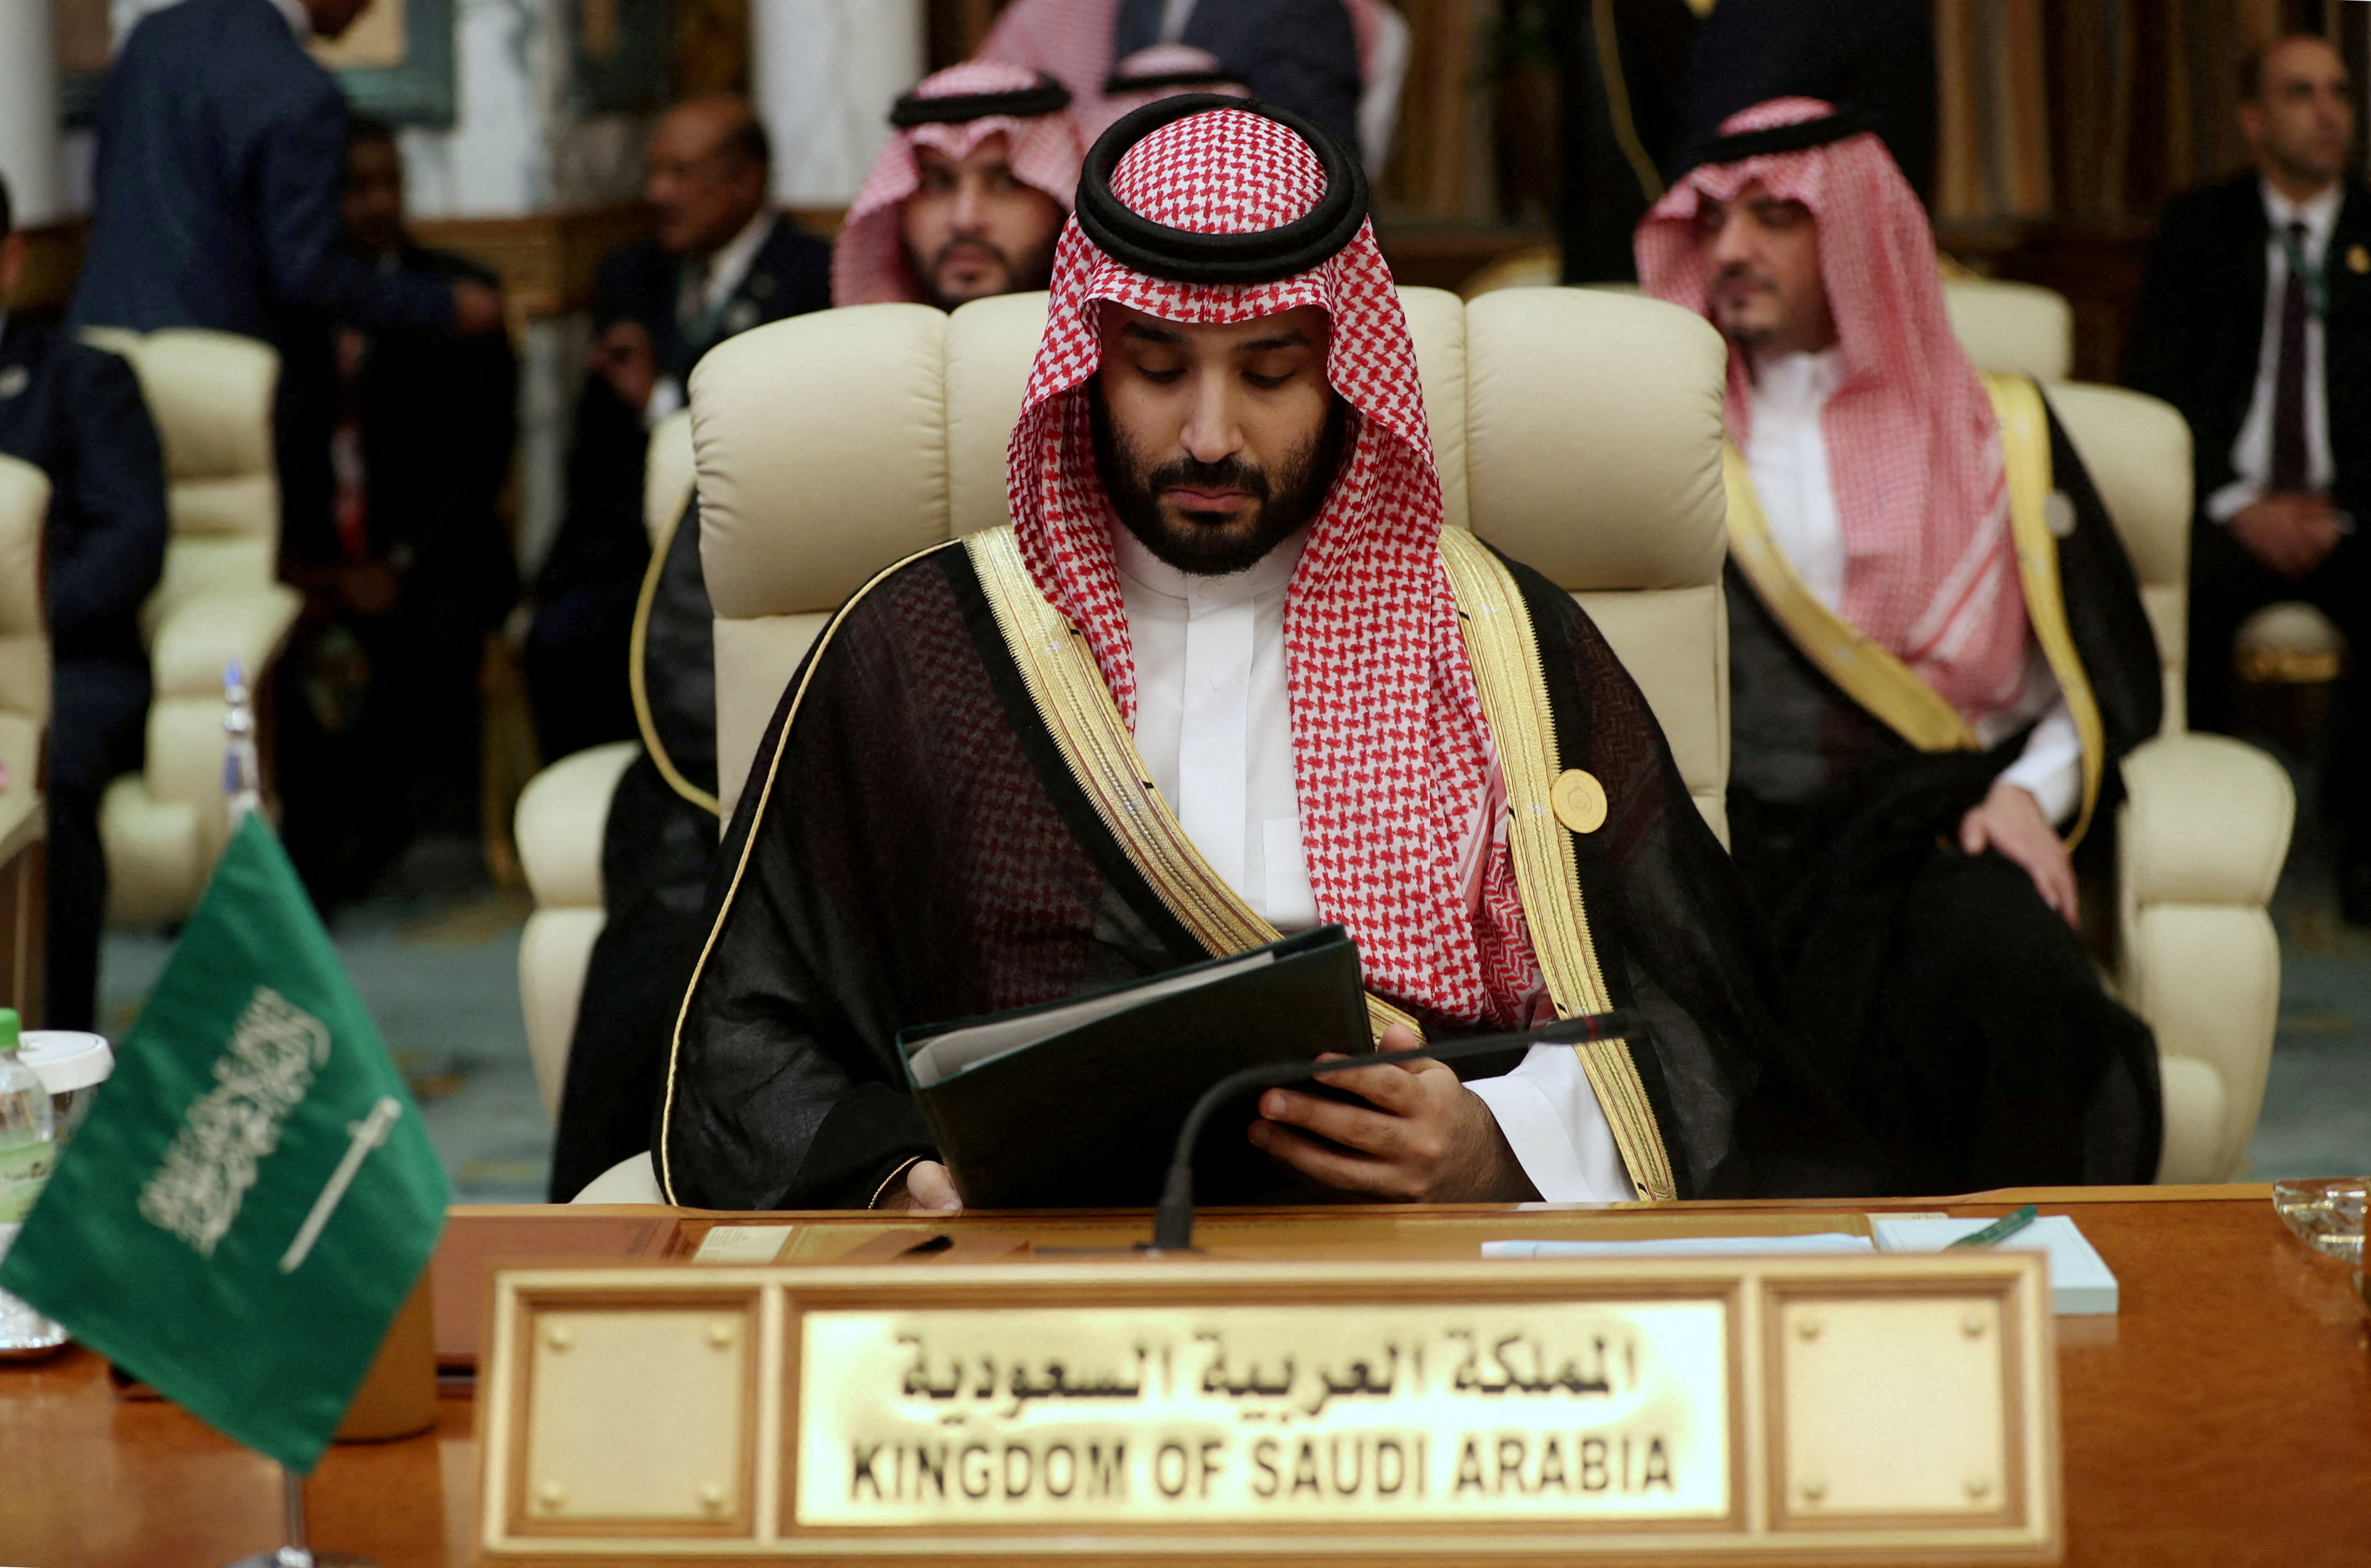 Crown Prince of Saudi Arabia Mohammad bin Salman is seen during the Arab Summit in Mecca